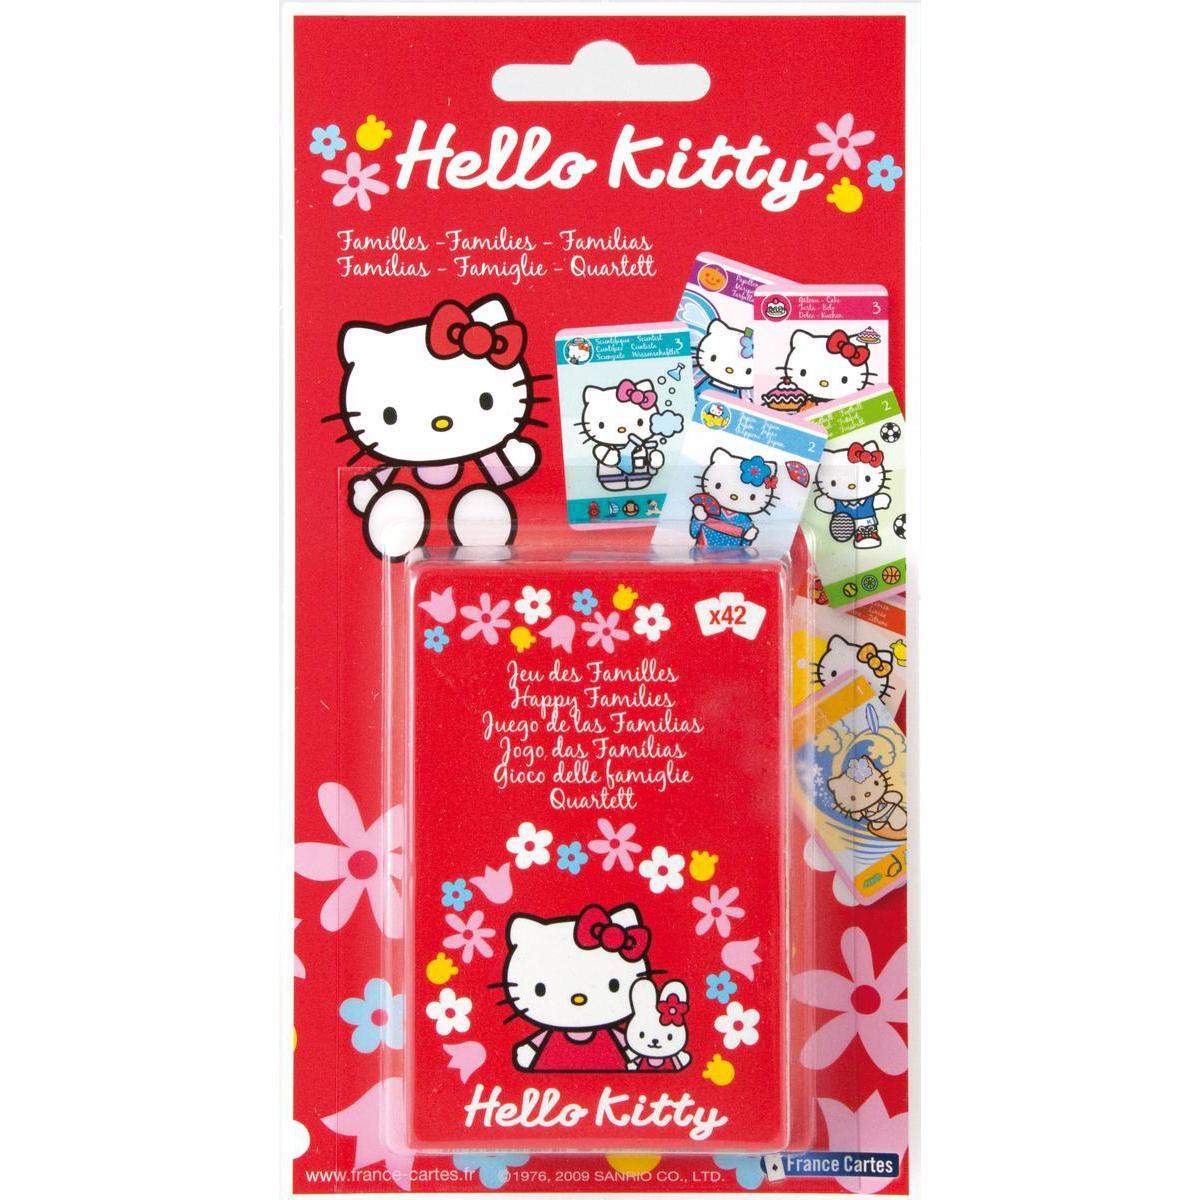 Le jeu de 7 familles Hello Kitty - Papier - 19 x 10 x 15 cm - Multicolore